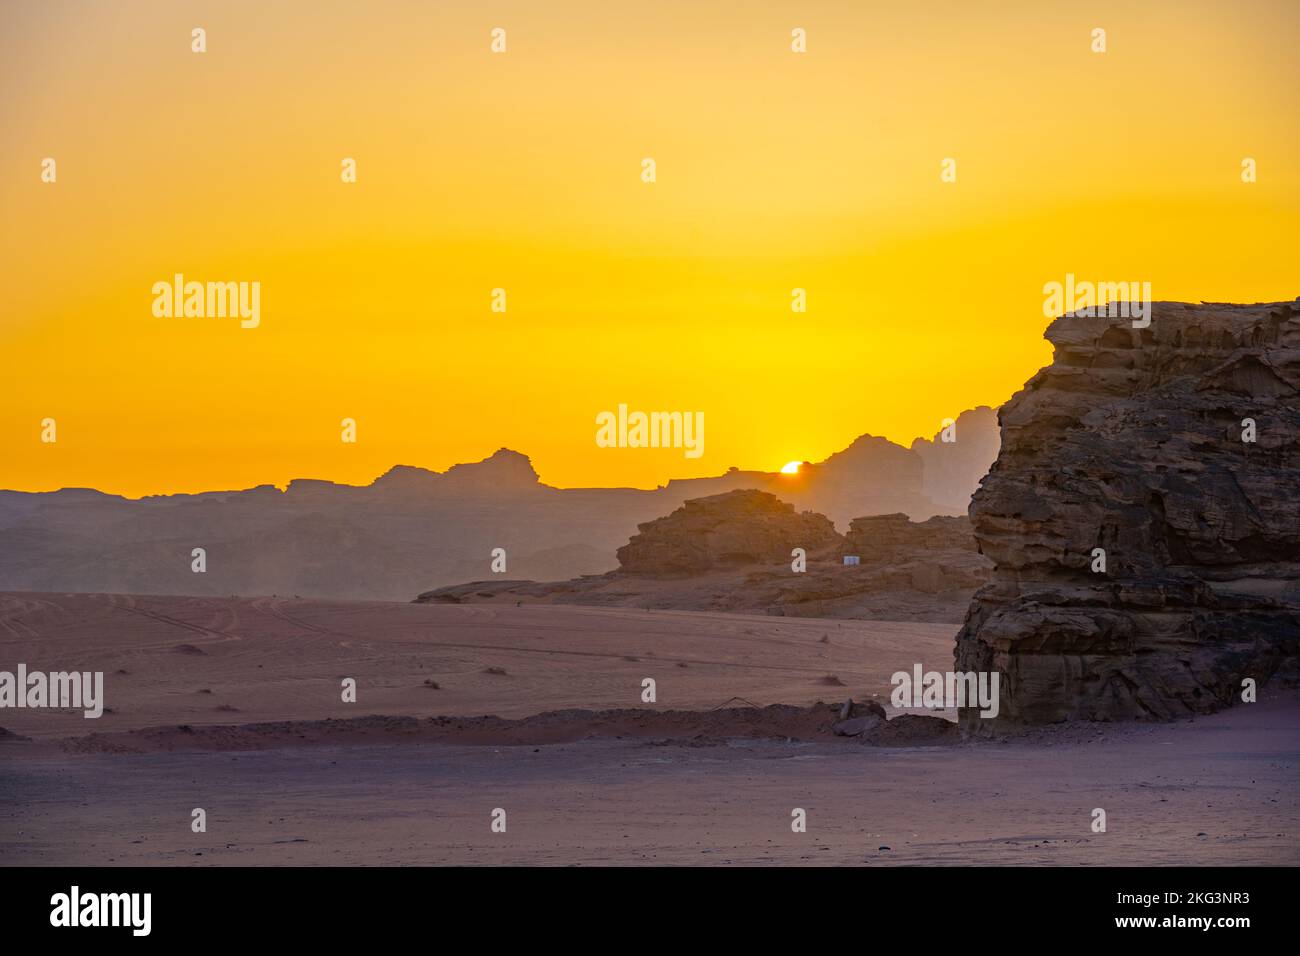 The mountains of Wadi Rum Jordan at sunset Stock Photo